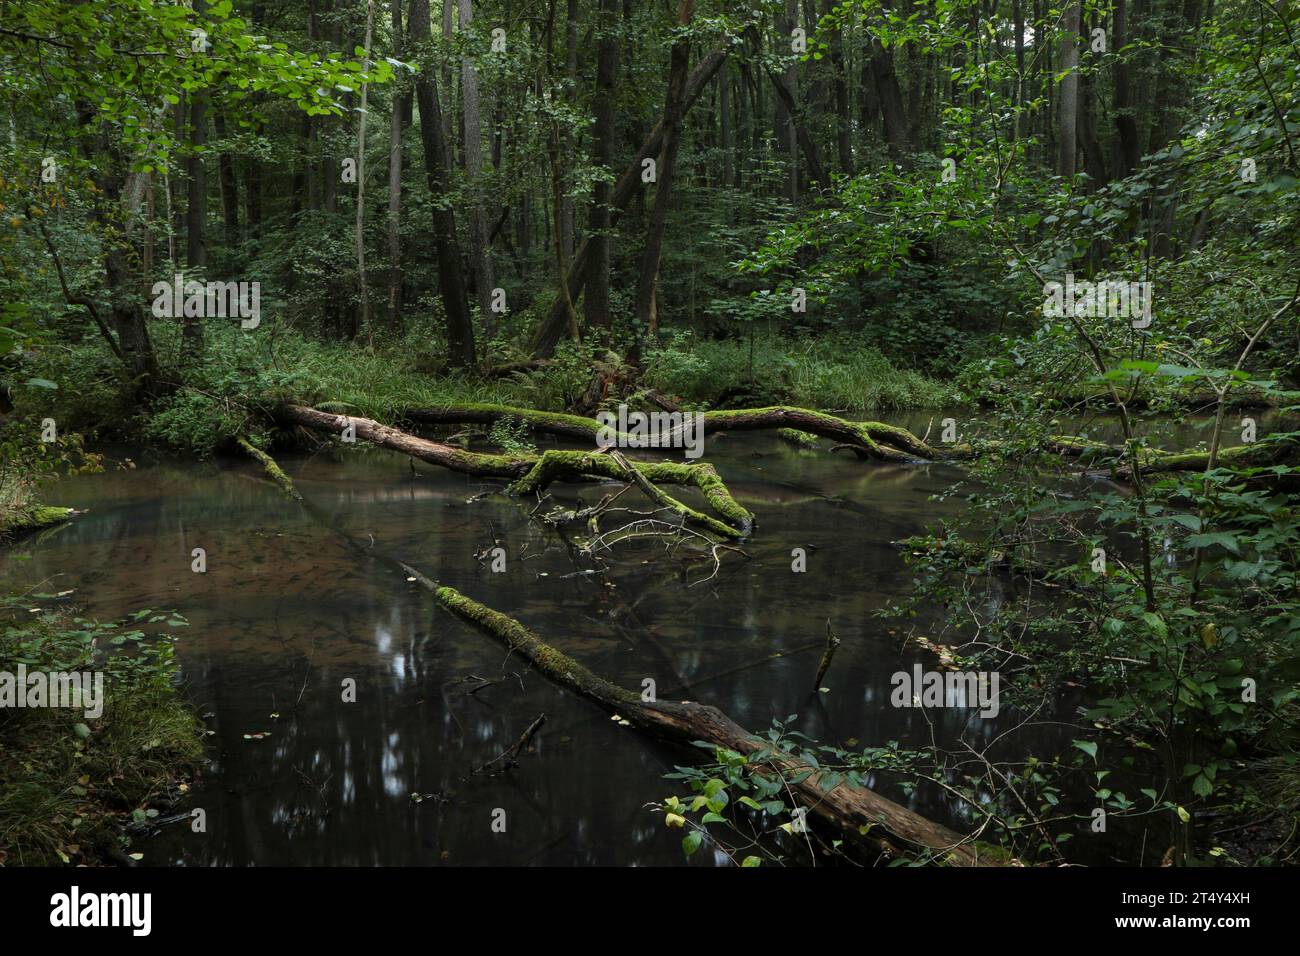 Un ruisseau presque naturel avec du bois mort coule à travers une forêt marécageuse d'aulne. Brandebourg, Eberswalde, Schwaerze, réserve naturelle de Schwaerzetal, Barnim Banque D'Images